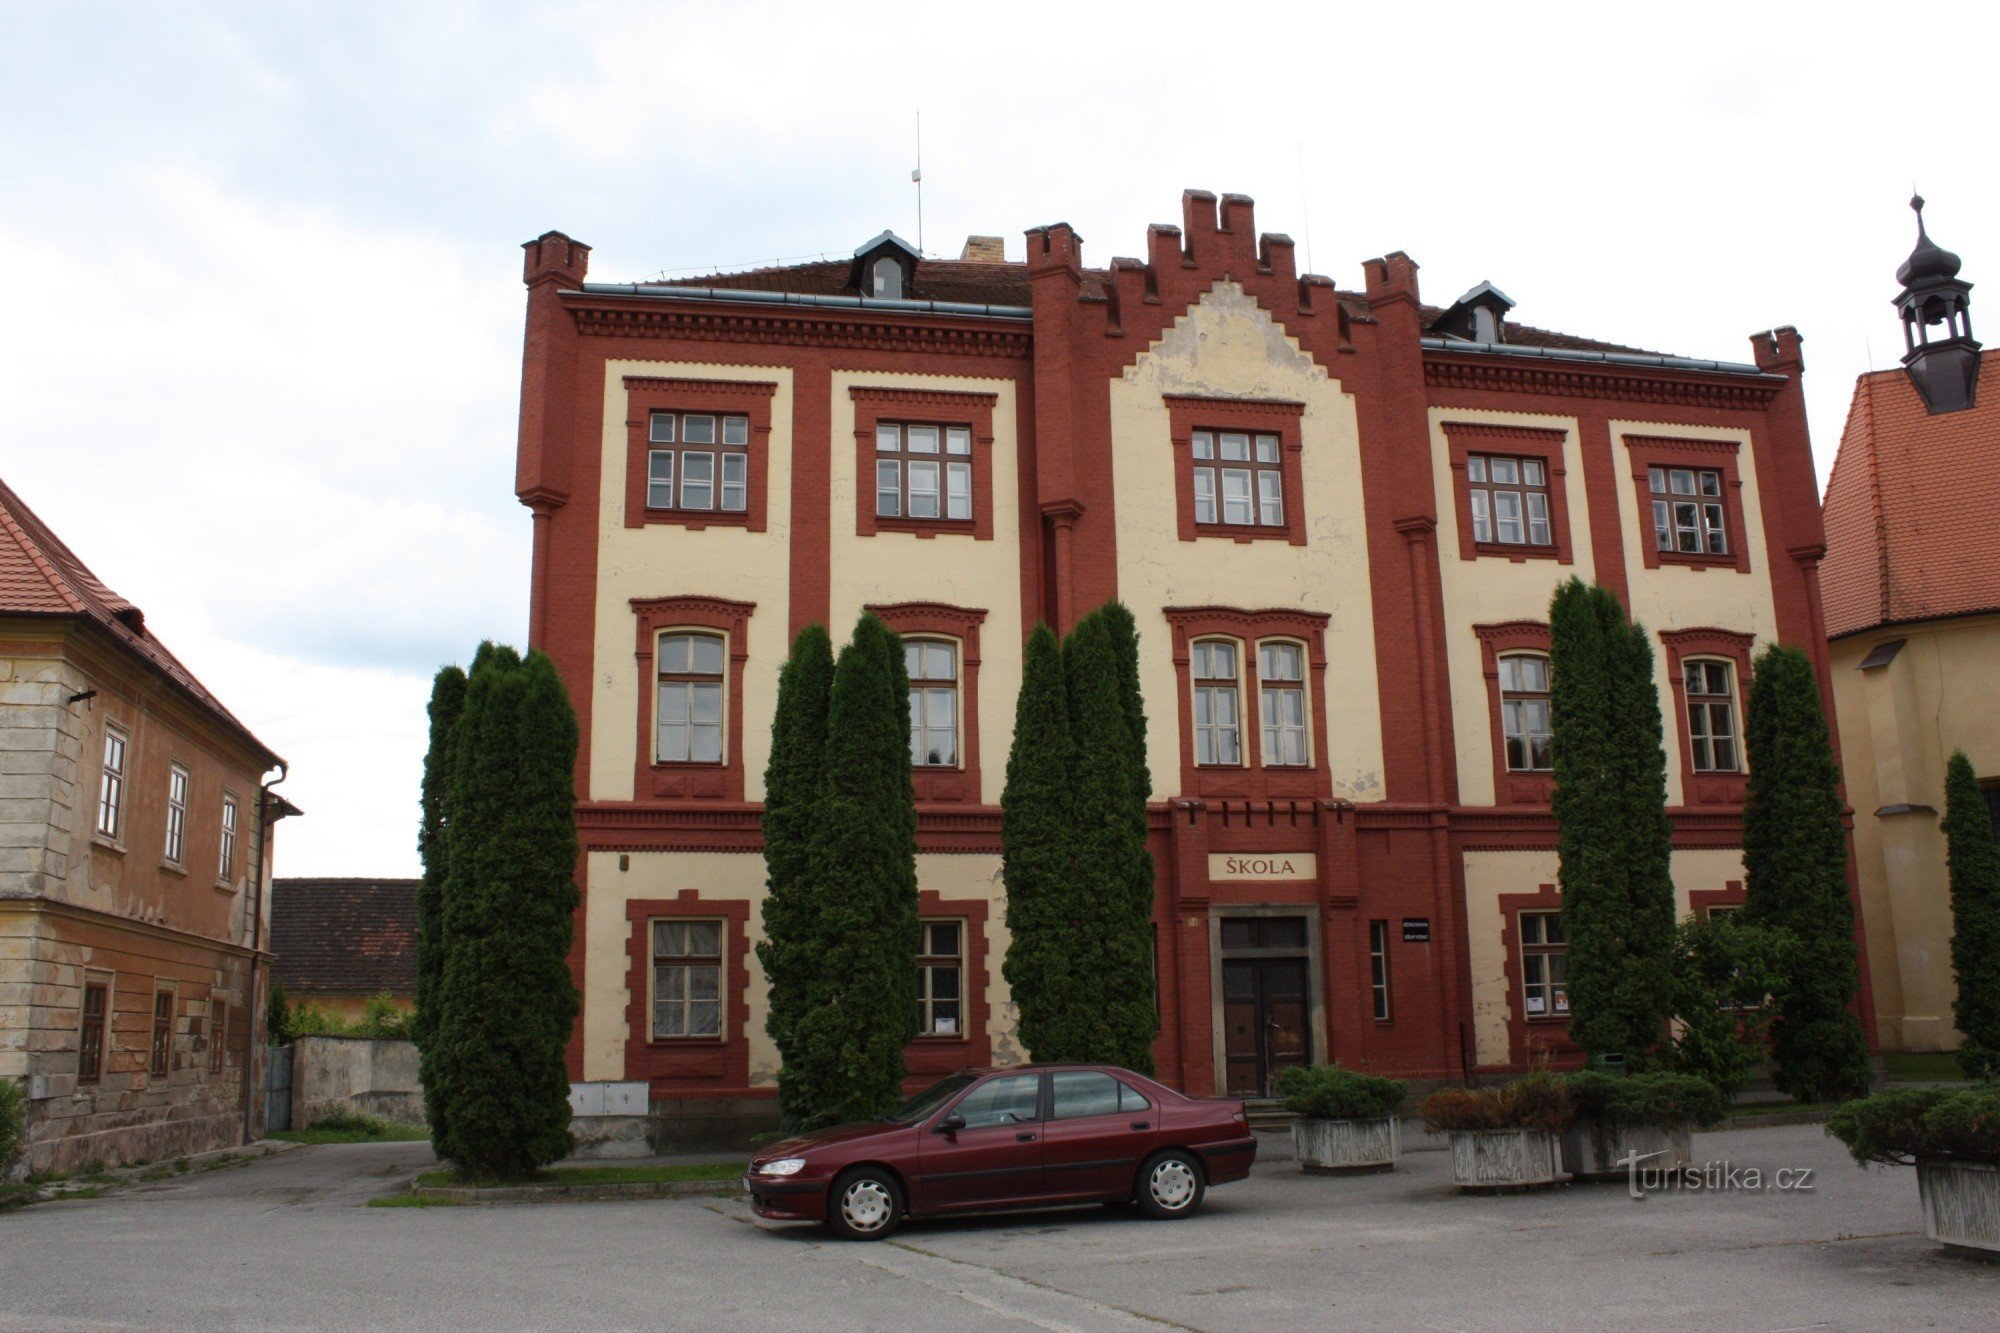 Neolicen vanhan koulun uusgoottilainen rakennus Pyhän Nikolauksen kirkon läheisyydessä. Wenceslas